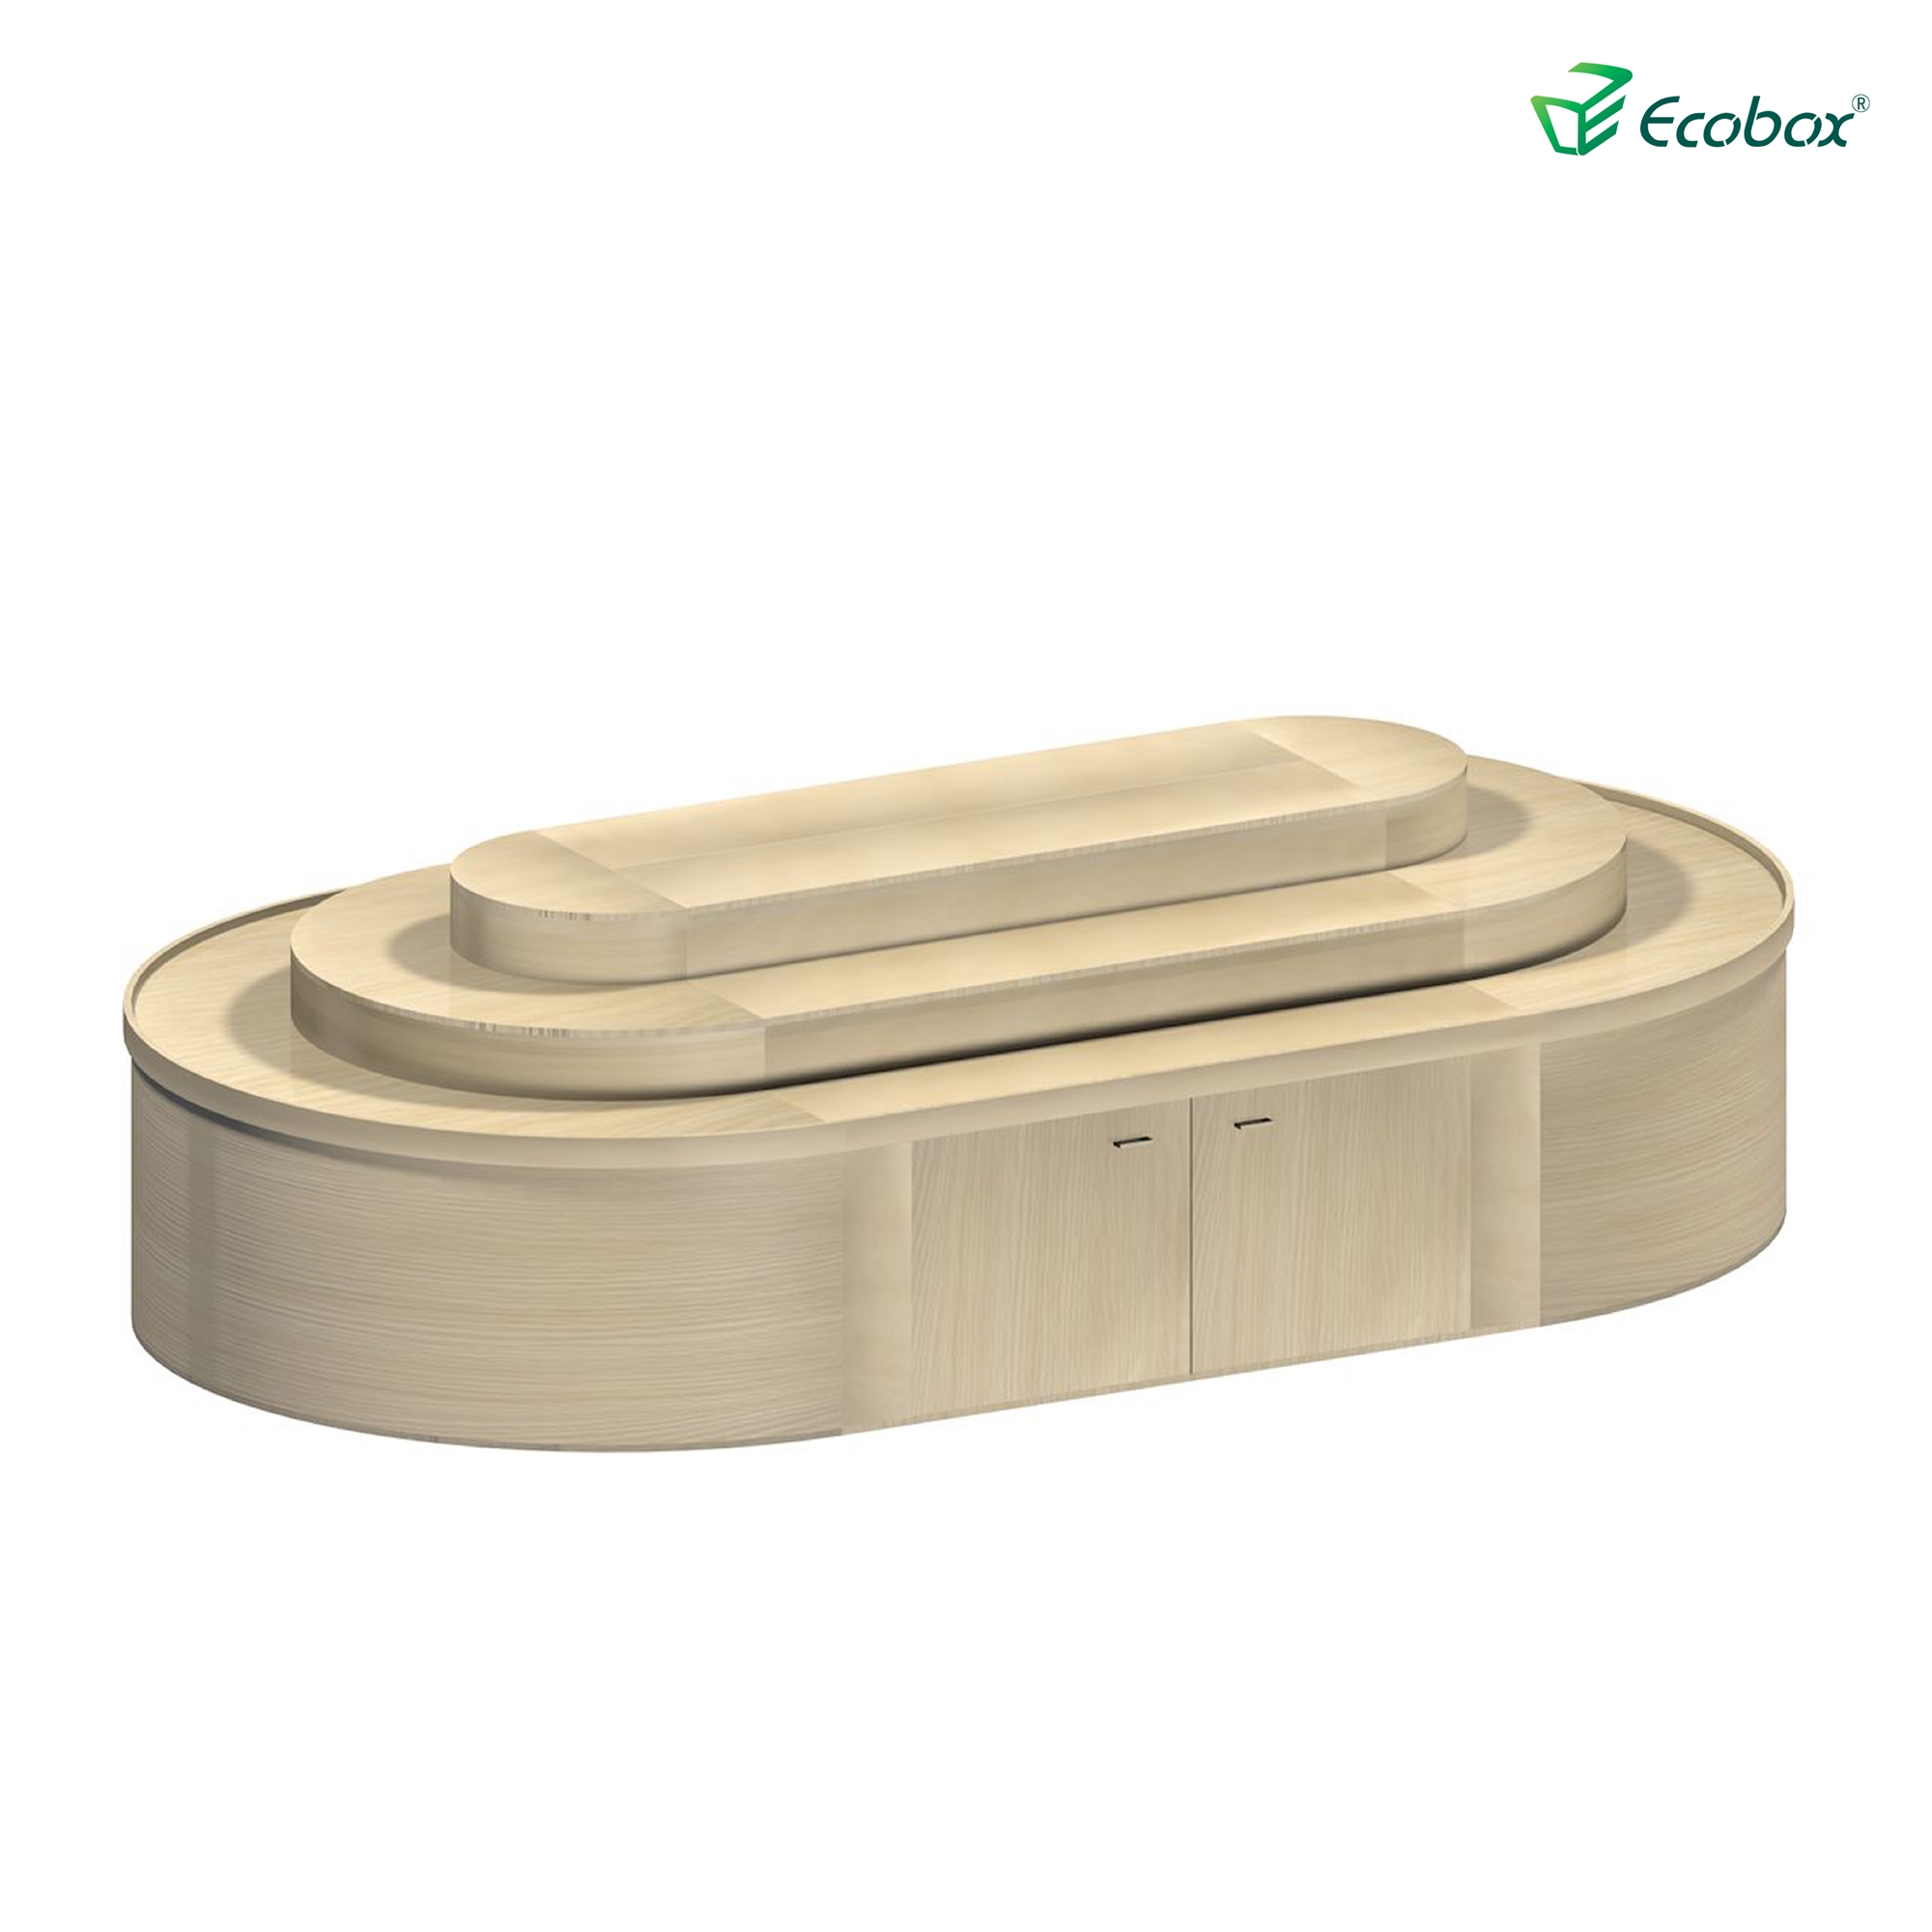 Ecobox g012 supermercado exibe prateleira redonda de nozes doces prateleira com caixa hermética